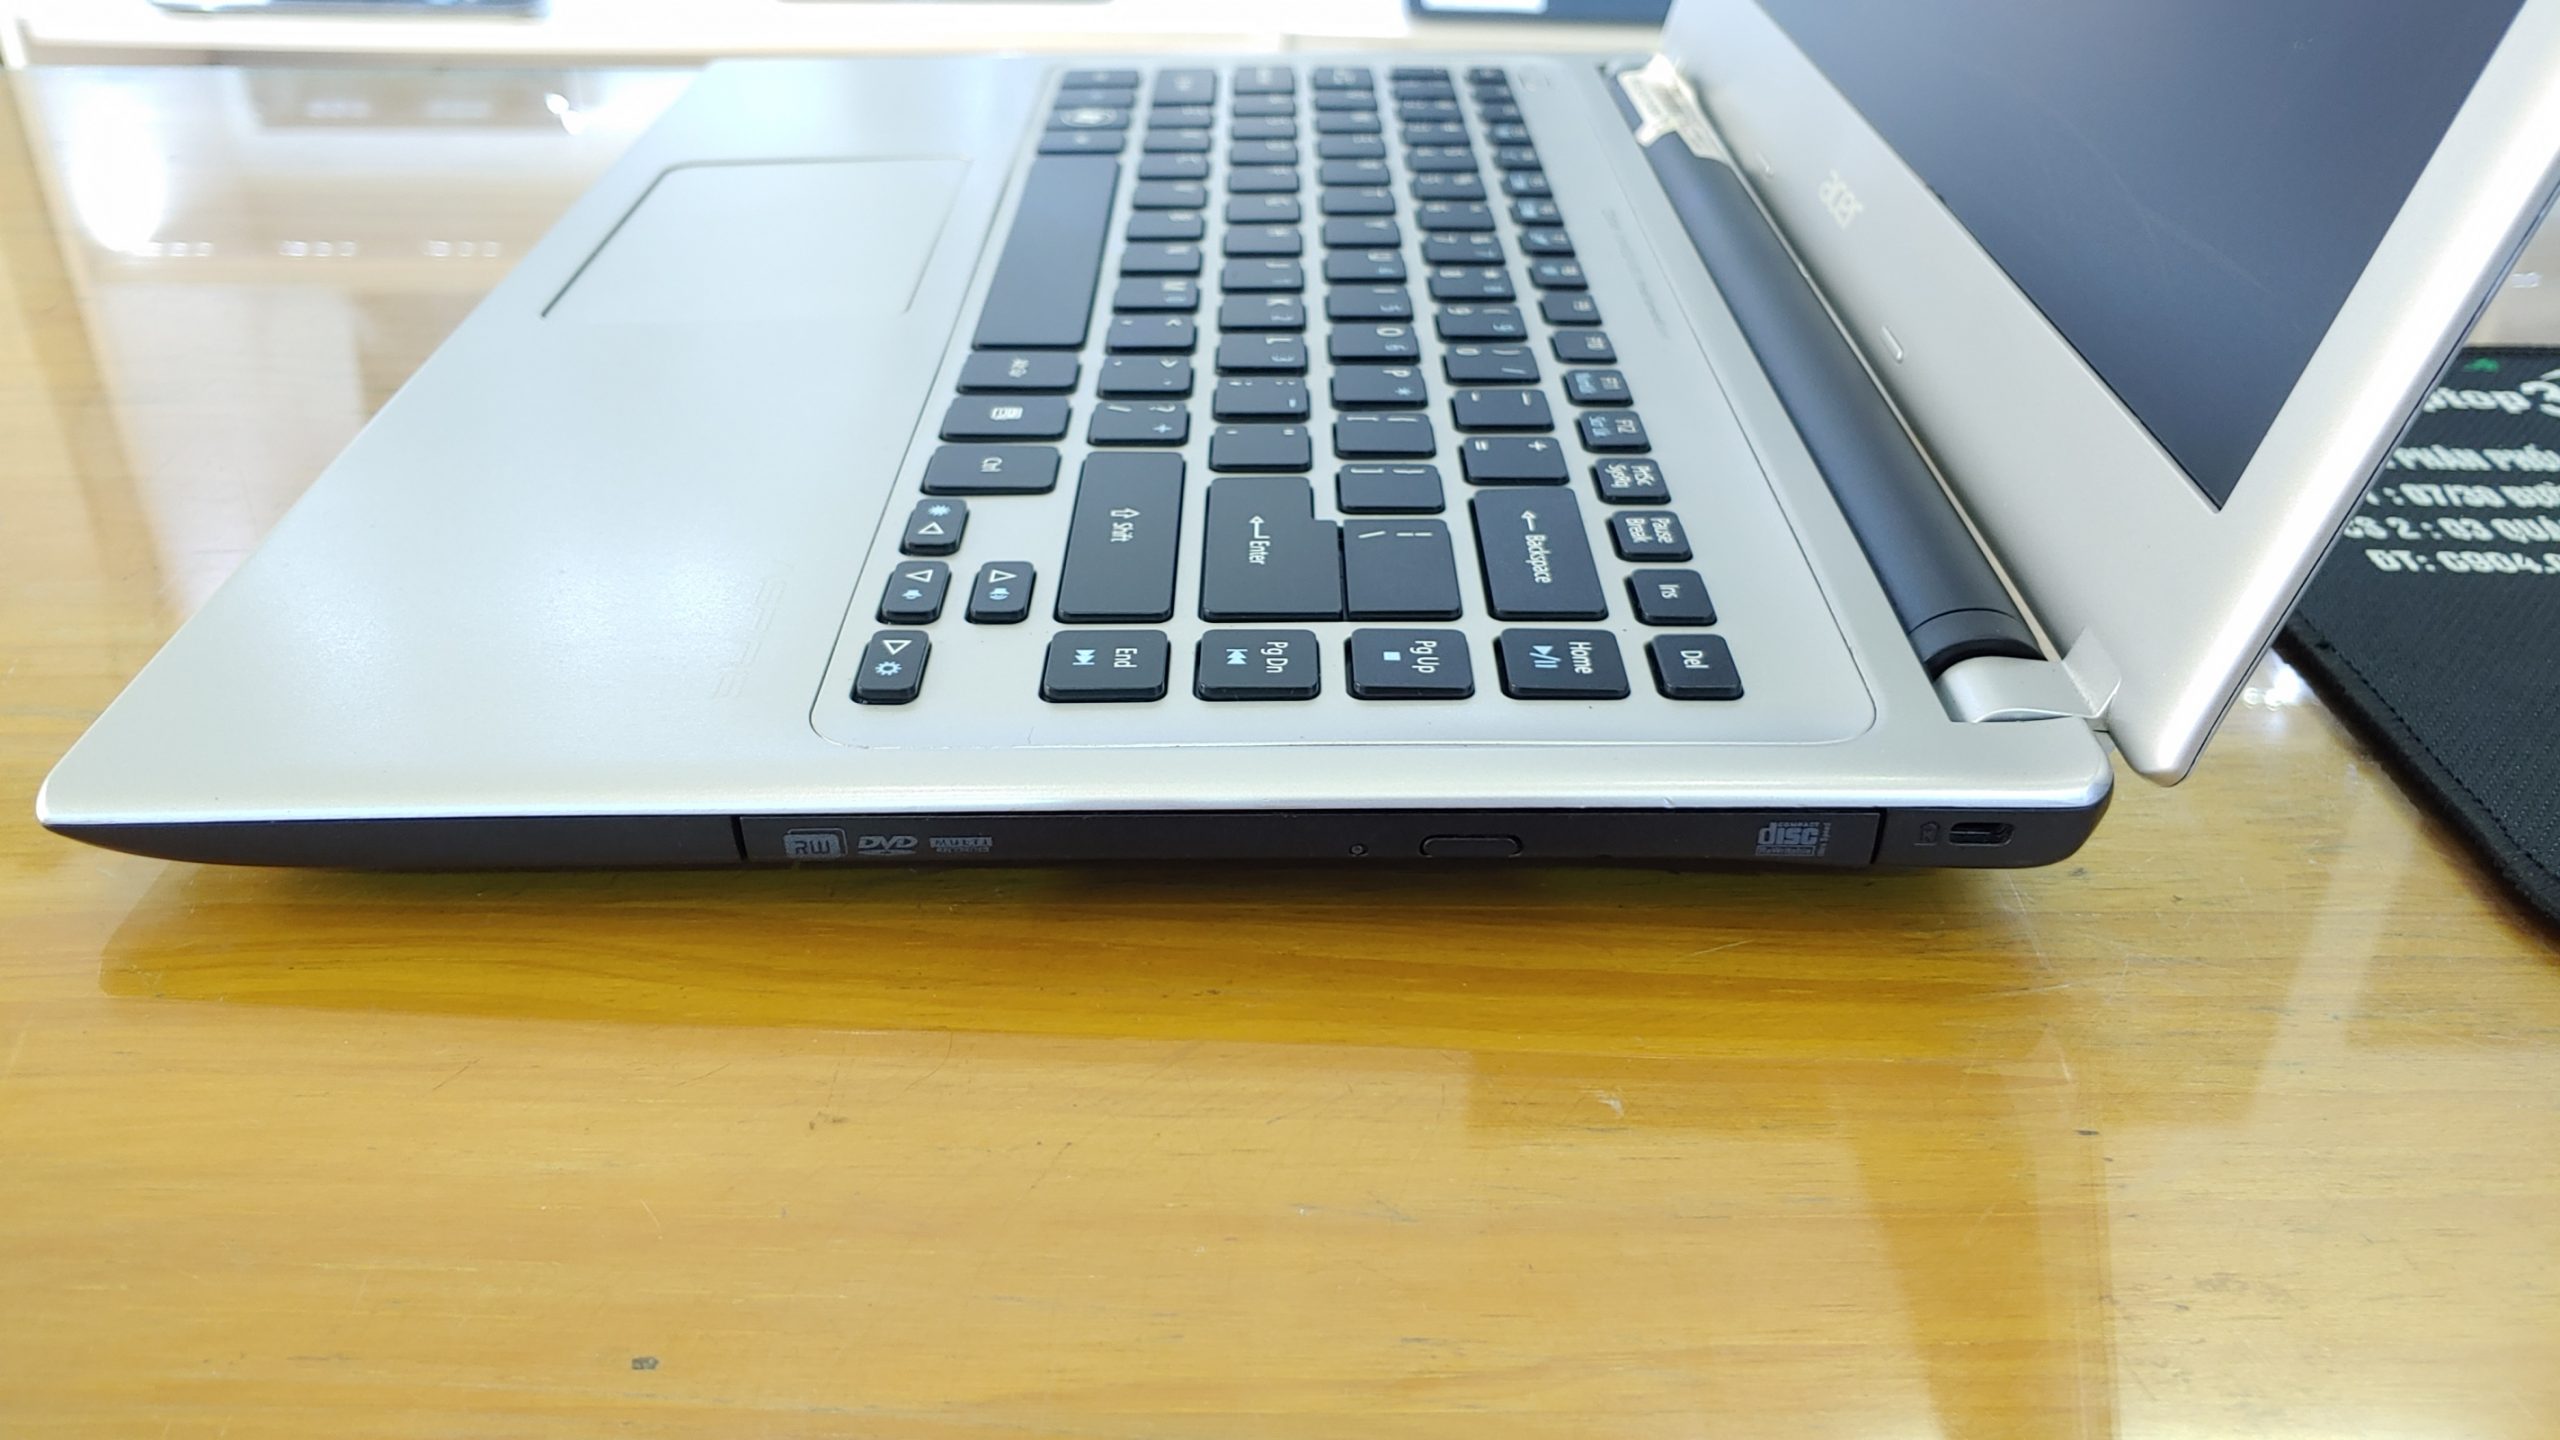 Laptop Acer V5-431